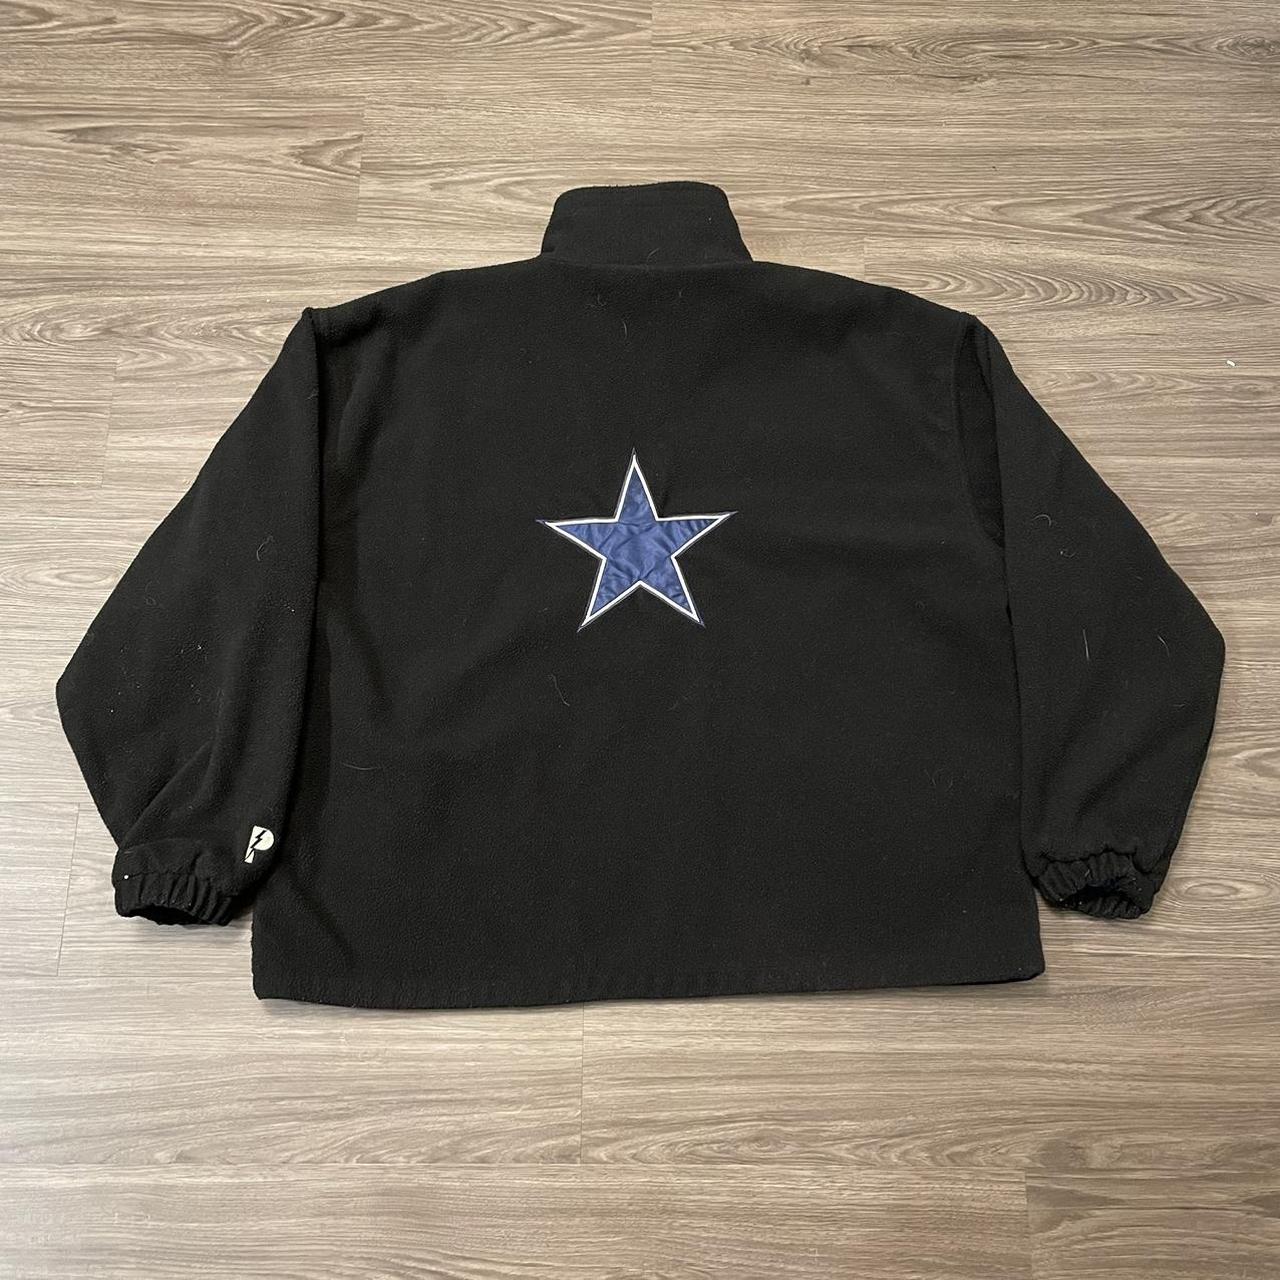 Reversible Dallas Cowboys Jacket 27x28 inches Y2K... - Depop